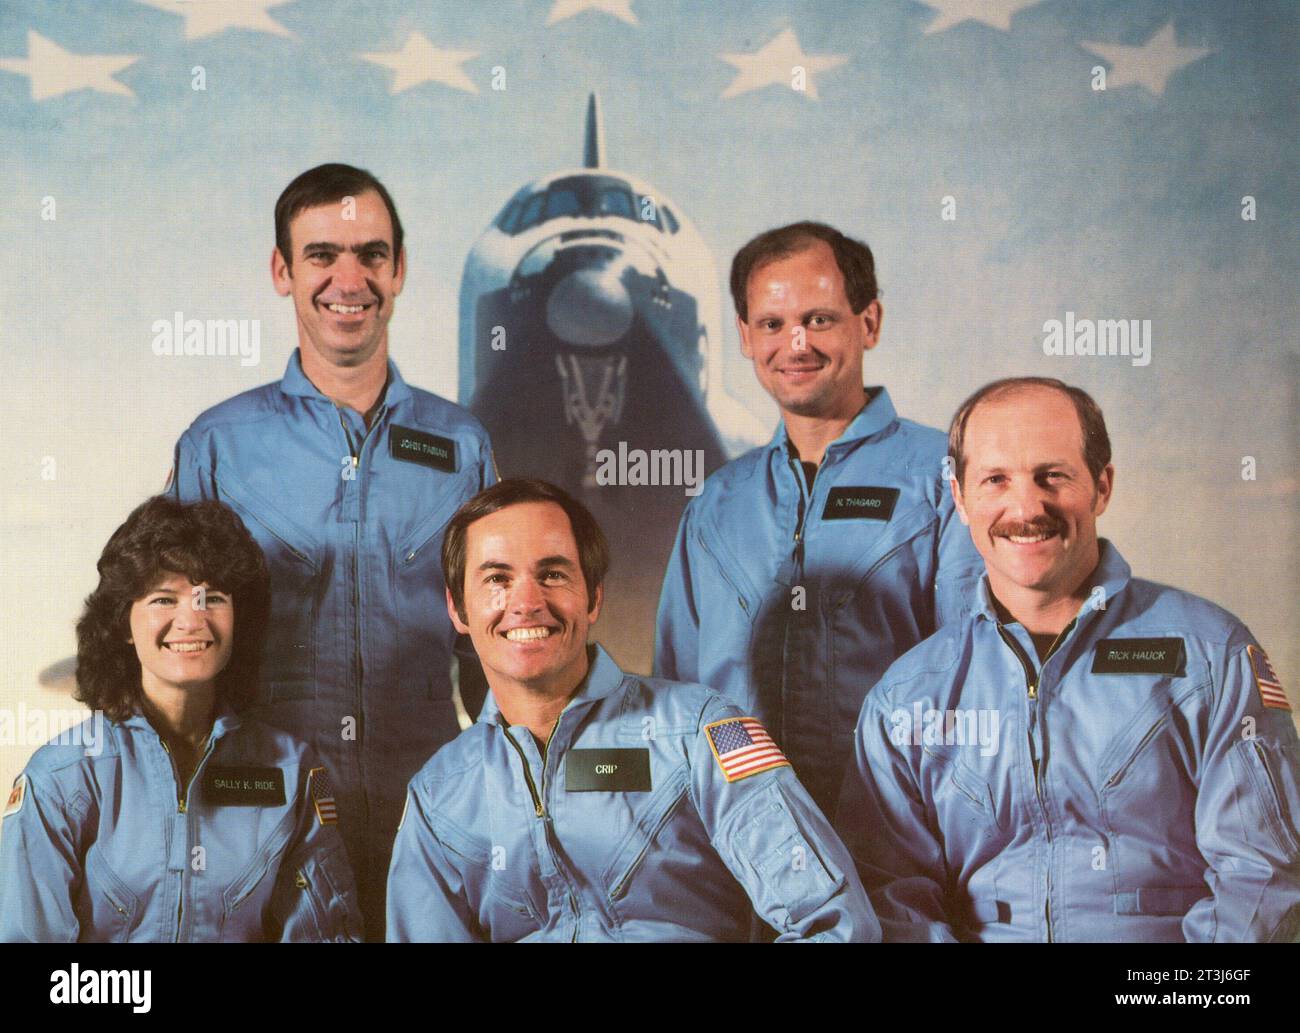 Astronauten der STS-7/Challenger-Mission sind von links nach rechts erste Reihe: Sally K. Ride (Missionsspezialist), Robert L. Crippen (Kommandeur), Frederick H. Hauck (Pilot); hintere Reihe: John M. Fabian (links) und Norman E. Thagard (Missionsspezialisten). STS-7 startete am 18. Juni 1983 die erste fünfköpfige Crew und die erste amerikanische Astronautin in den Weltraum. STS-7-Astronauten, 1983 Astronauten der STS-7/Challenger-Mission sind von links nach rechts erste Reihe: Sally K. Ride (Missionsspezialist), Robert L. Crippen (Kommandeur), Frederick H. Hauck (Pilot); hintere Reihe: John M. Fabian (links) und Norman E. Thagard Stockfoto